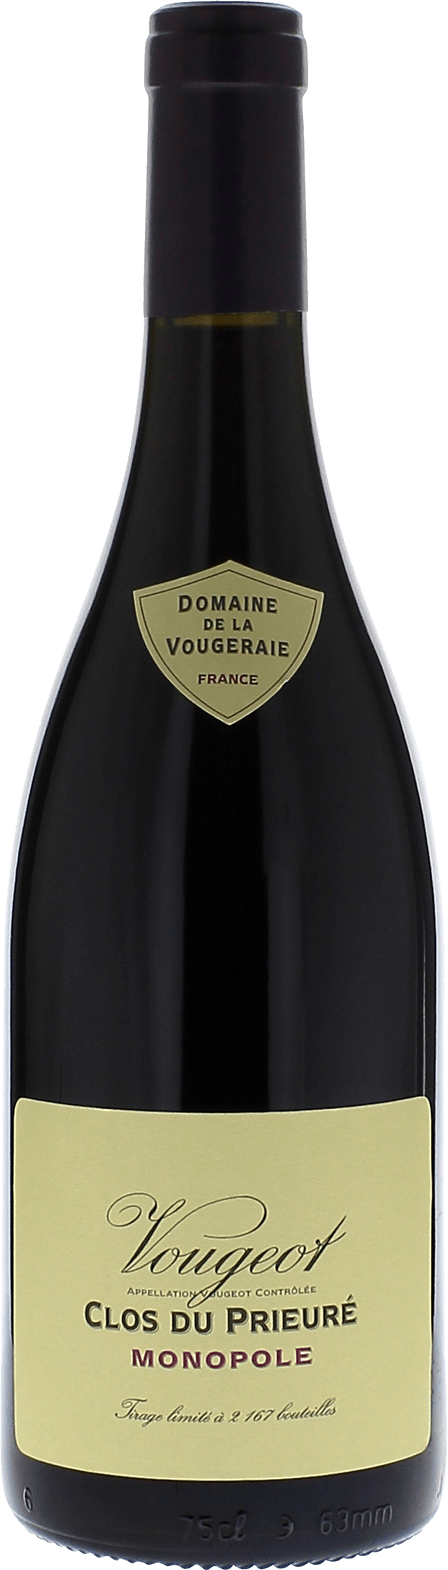 Vougeot clos du prieur 2016 Domaine VOUGERAIE, Bourgogne rouge